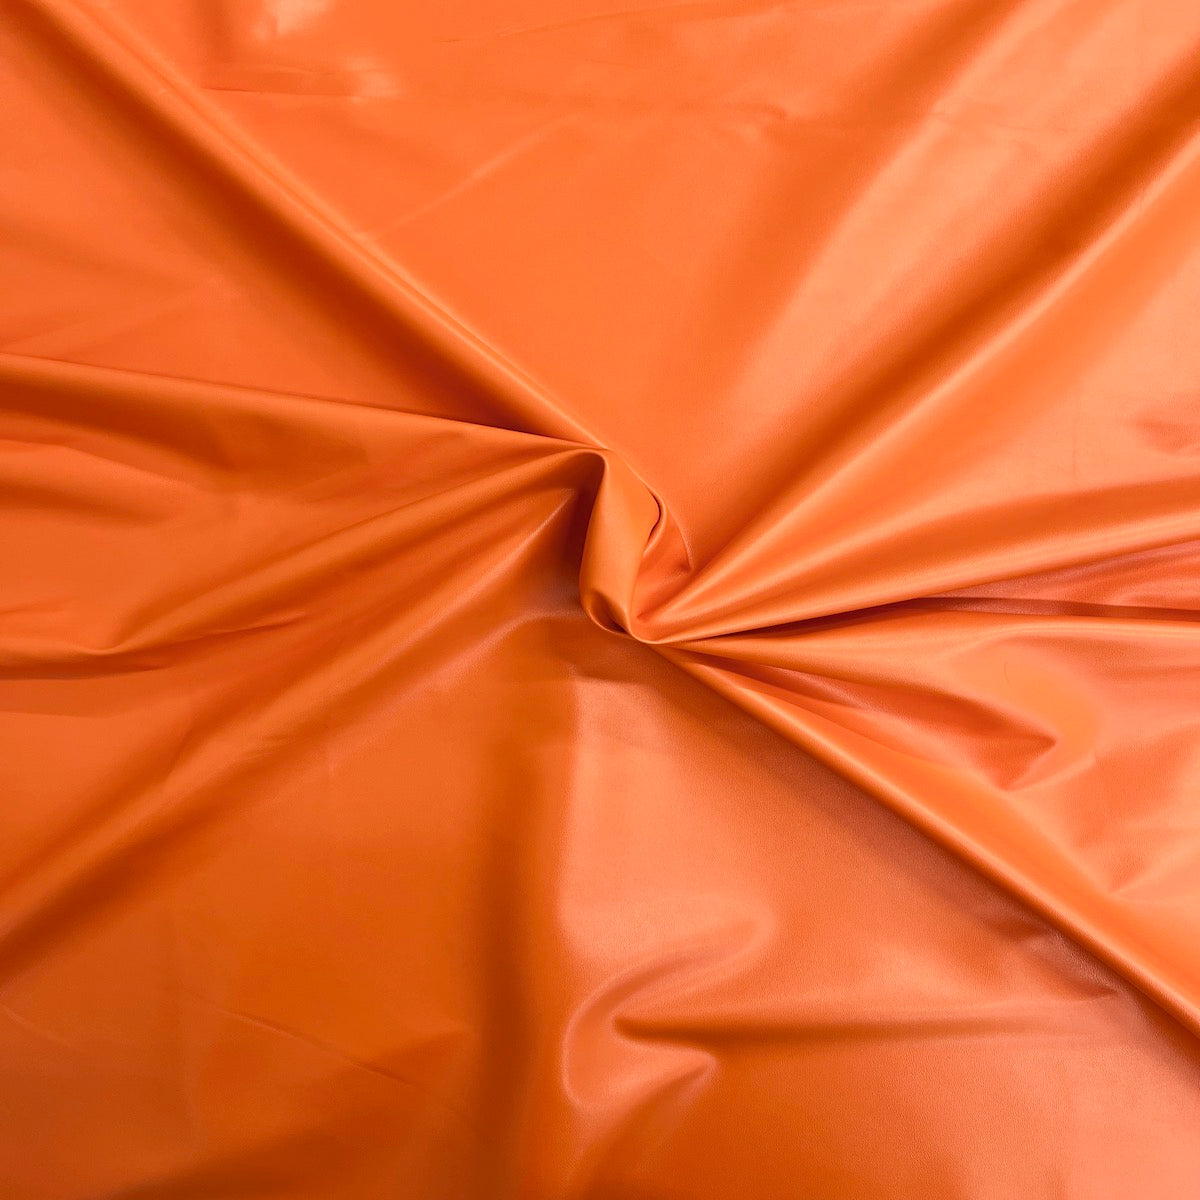 Tela de vinilo de piel sintética elástica bidireccional naranja 